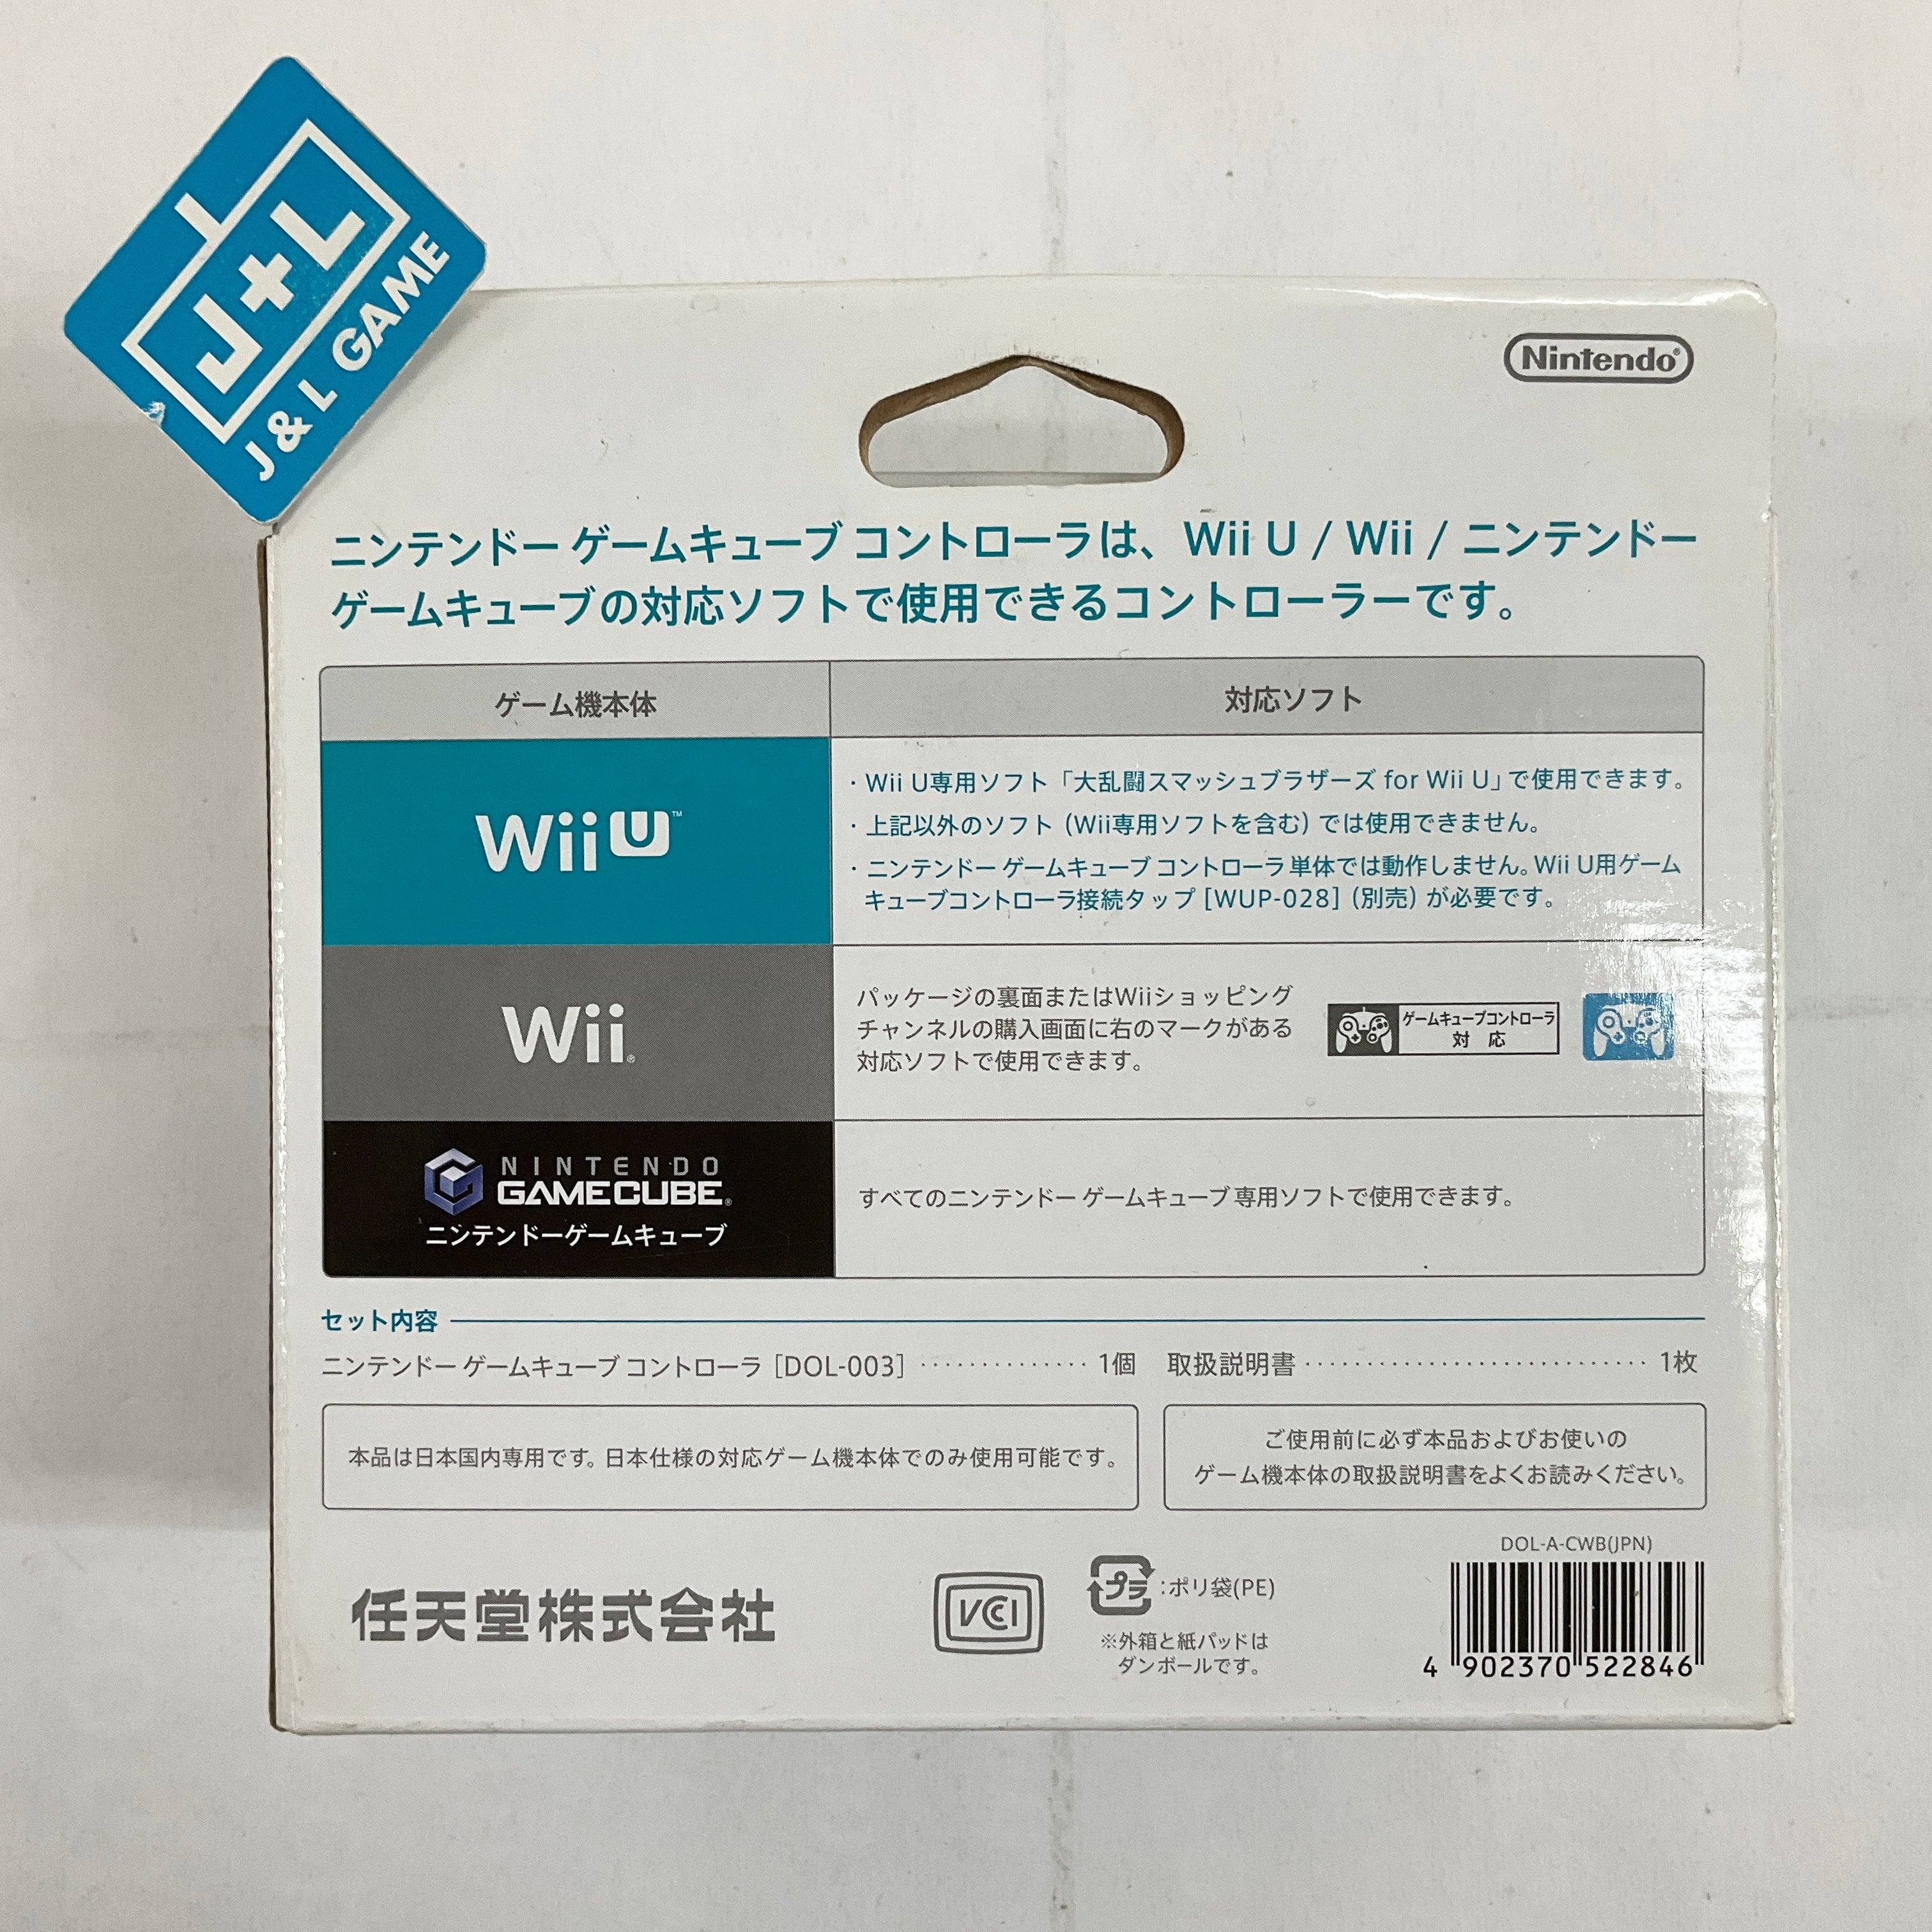 Nintendo GameCube Controller (Super Smash Bros) (White) - (GC) GameCube [Pre-Owned] Accessories Nintendo   